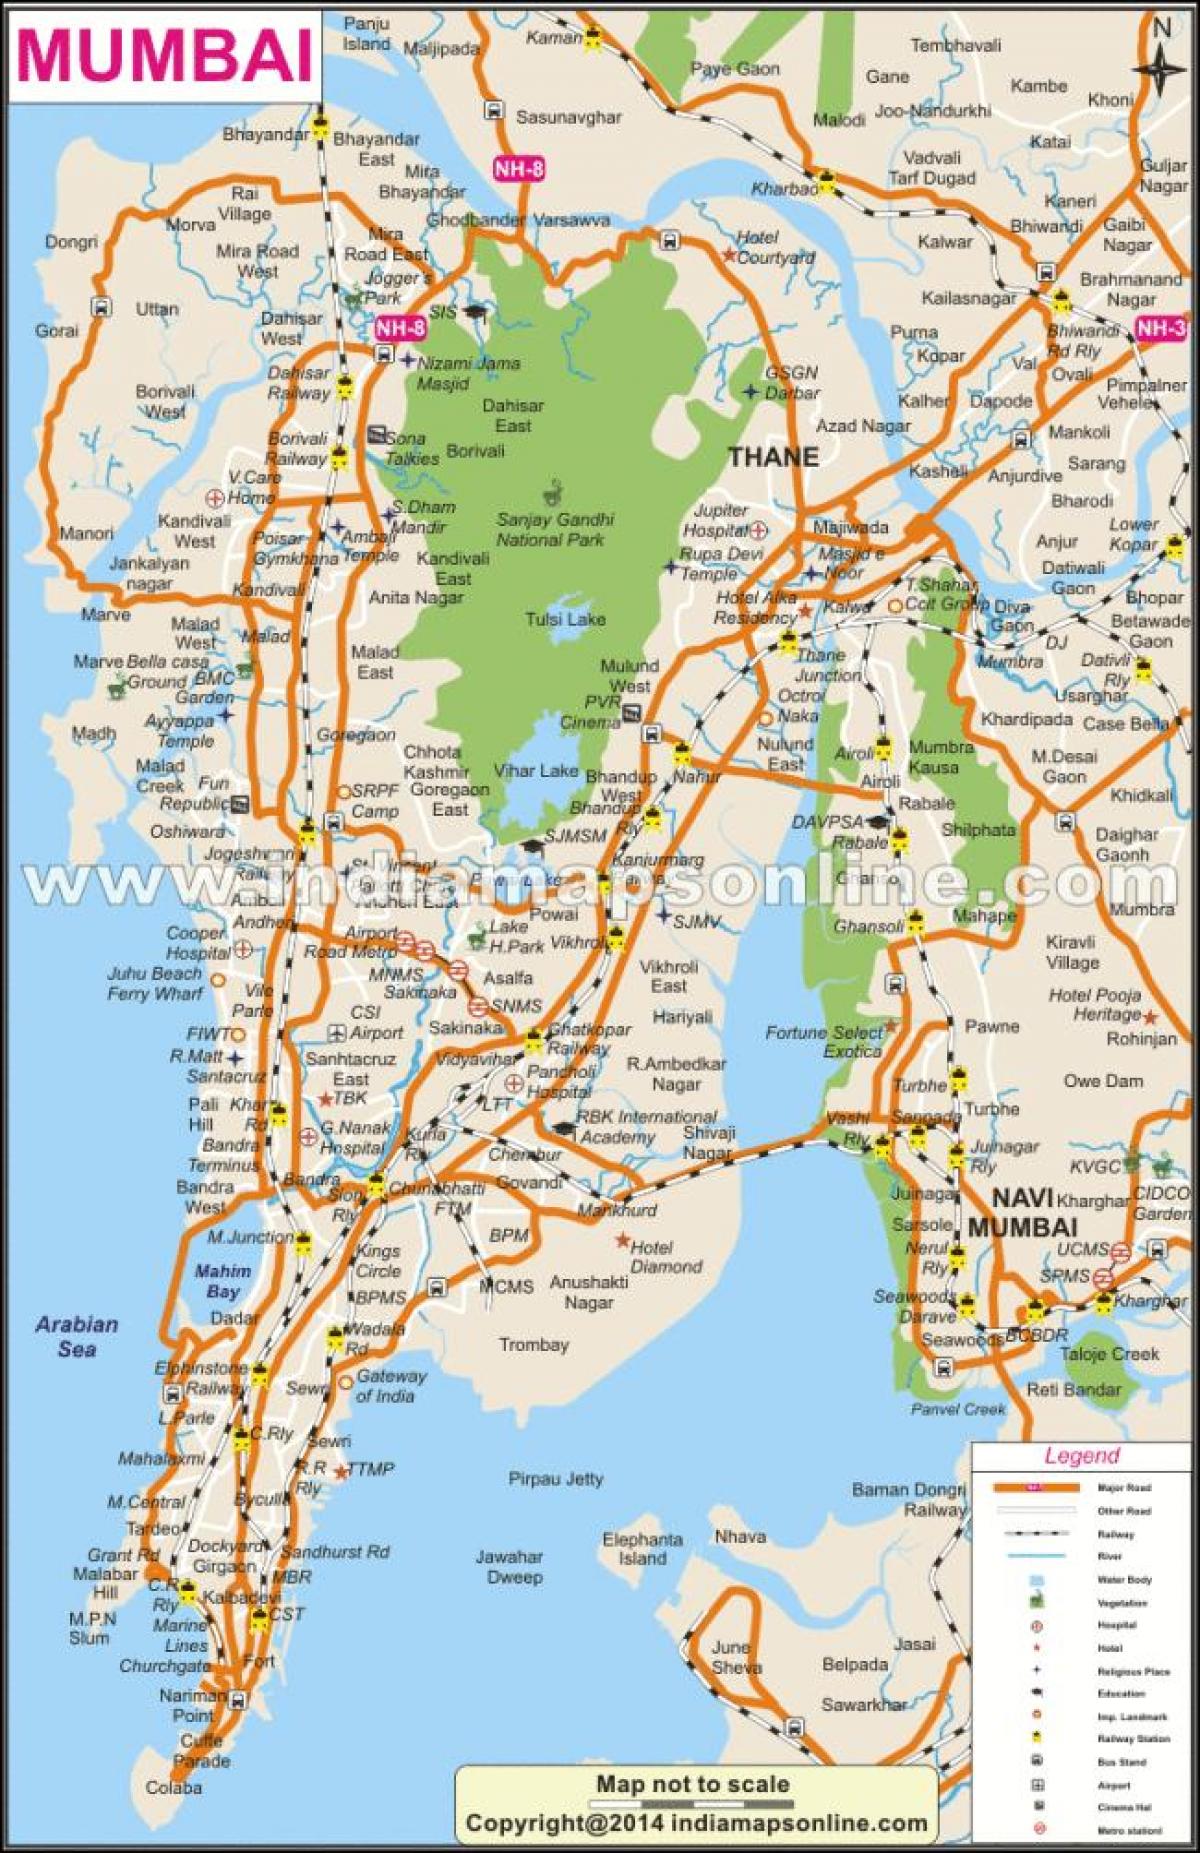 મુંબઇ પર નકશો